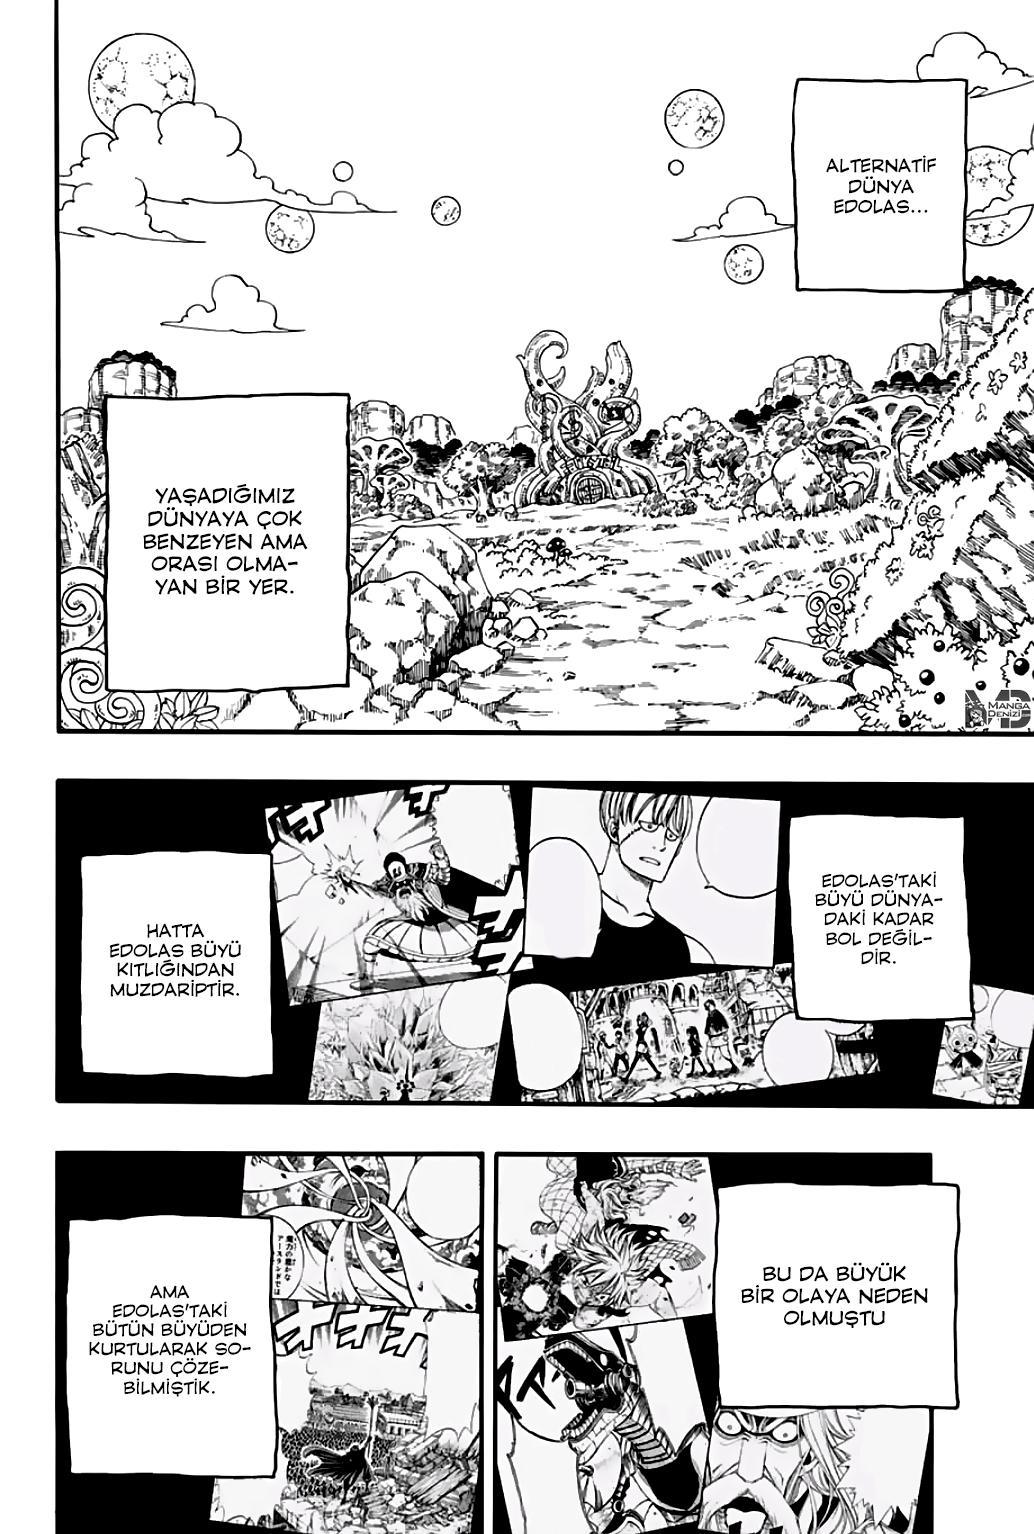 Fairy Tail: 100 Years Quest mangasının 066 bölümünün 3. sayfasını okuyorsunuz.